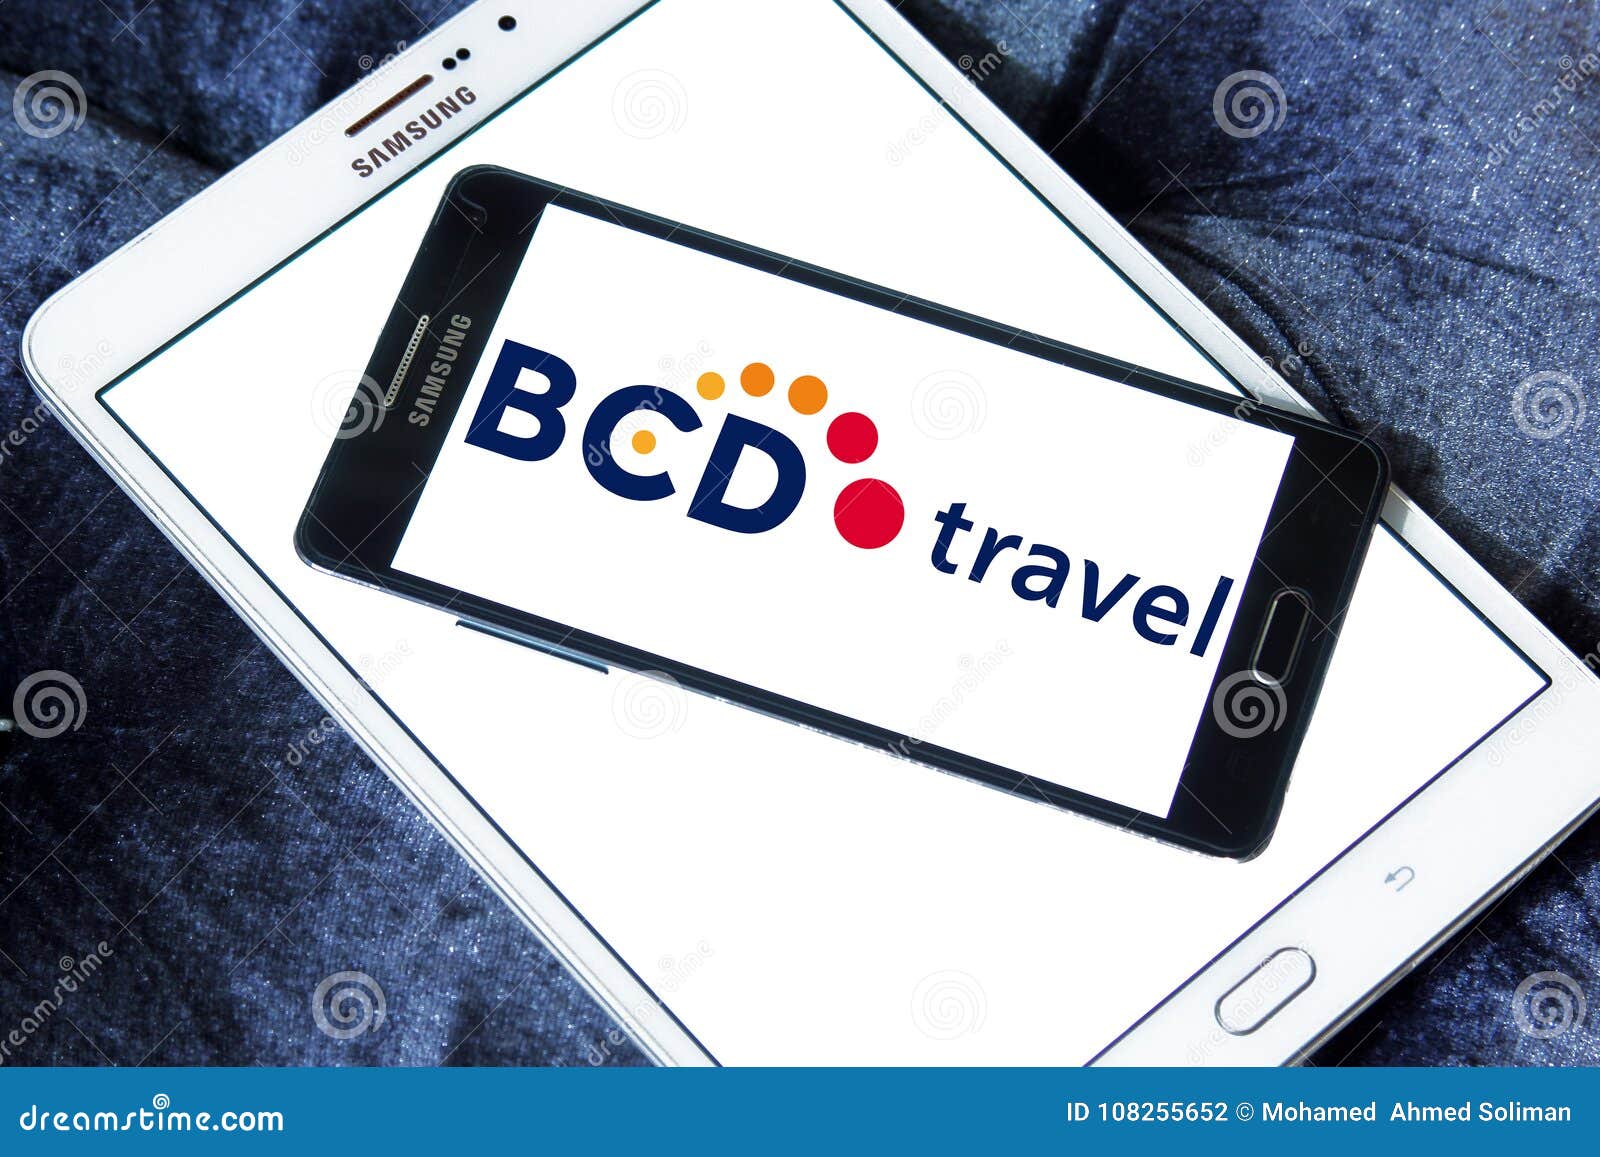 bcd travel full name